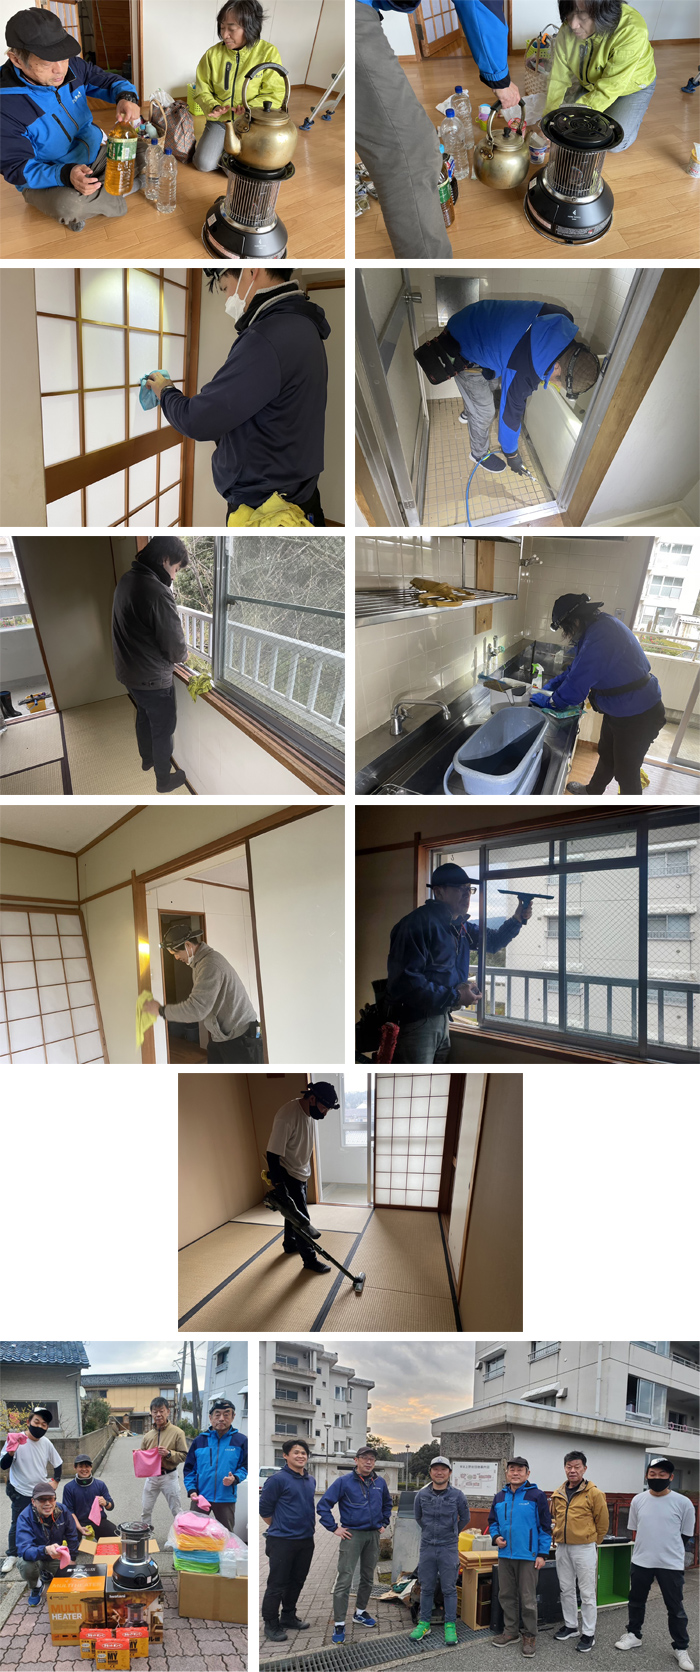 石川県輪島被災者受け入れ施設にてボランティア清掃